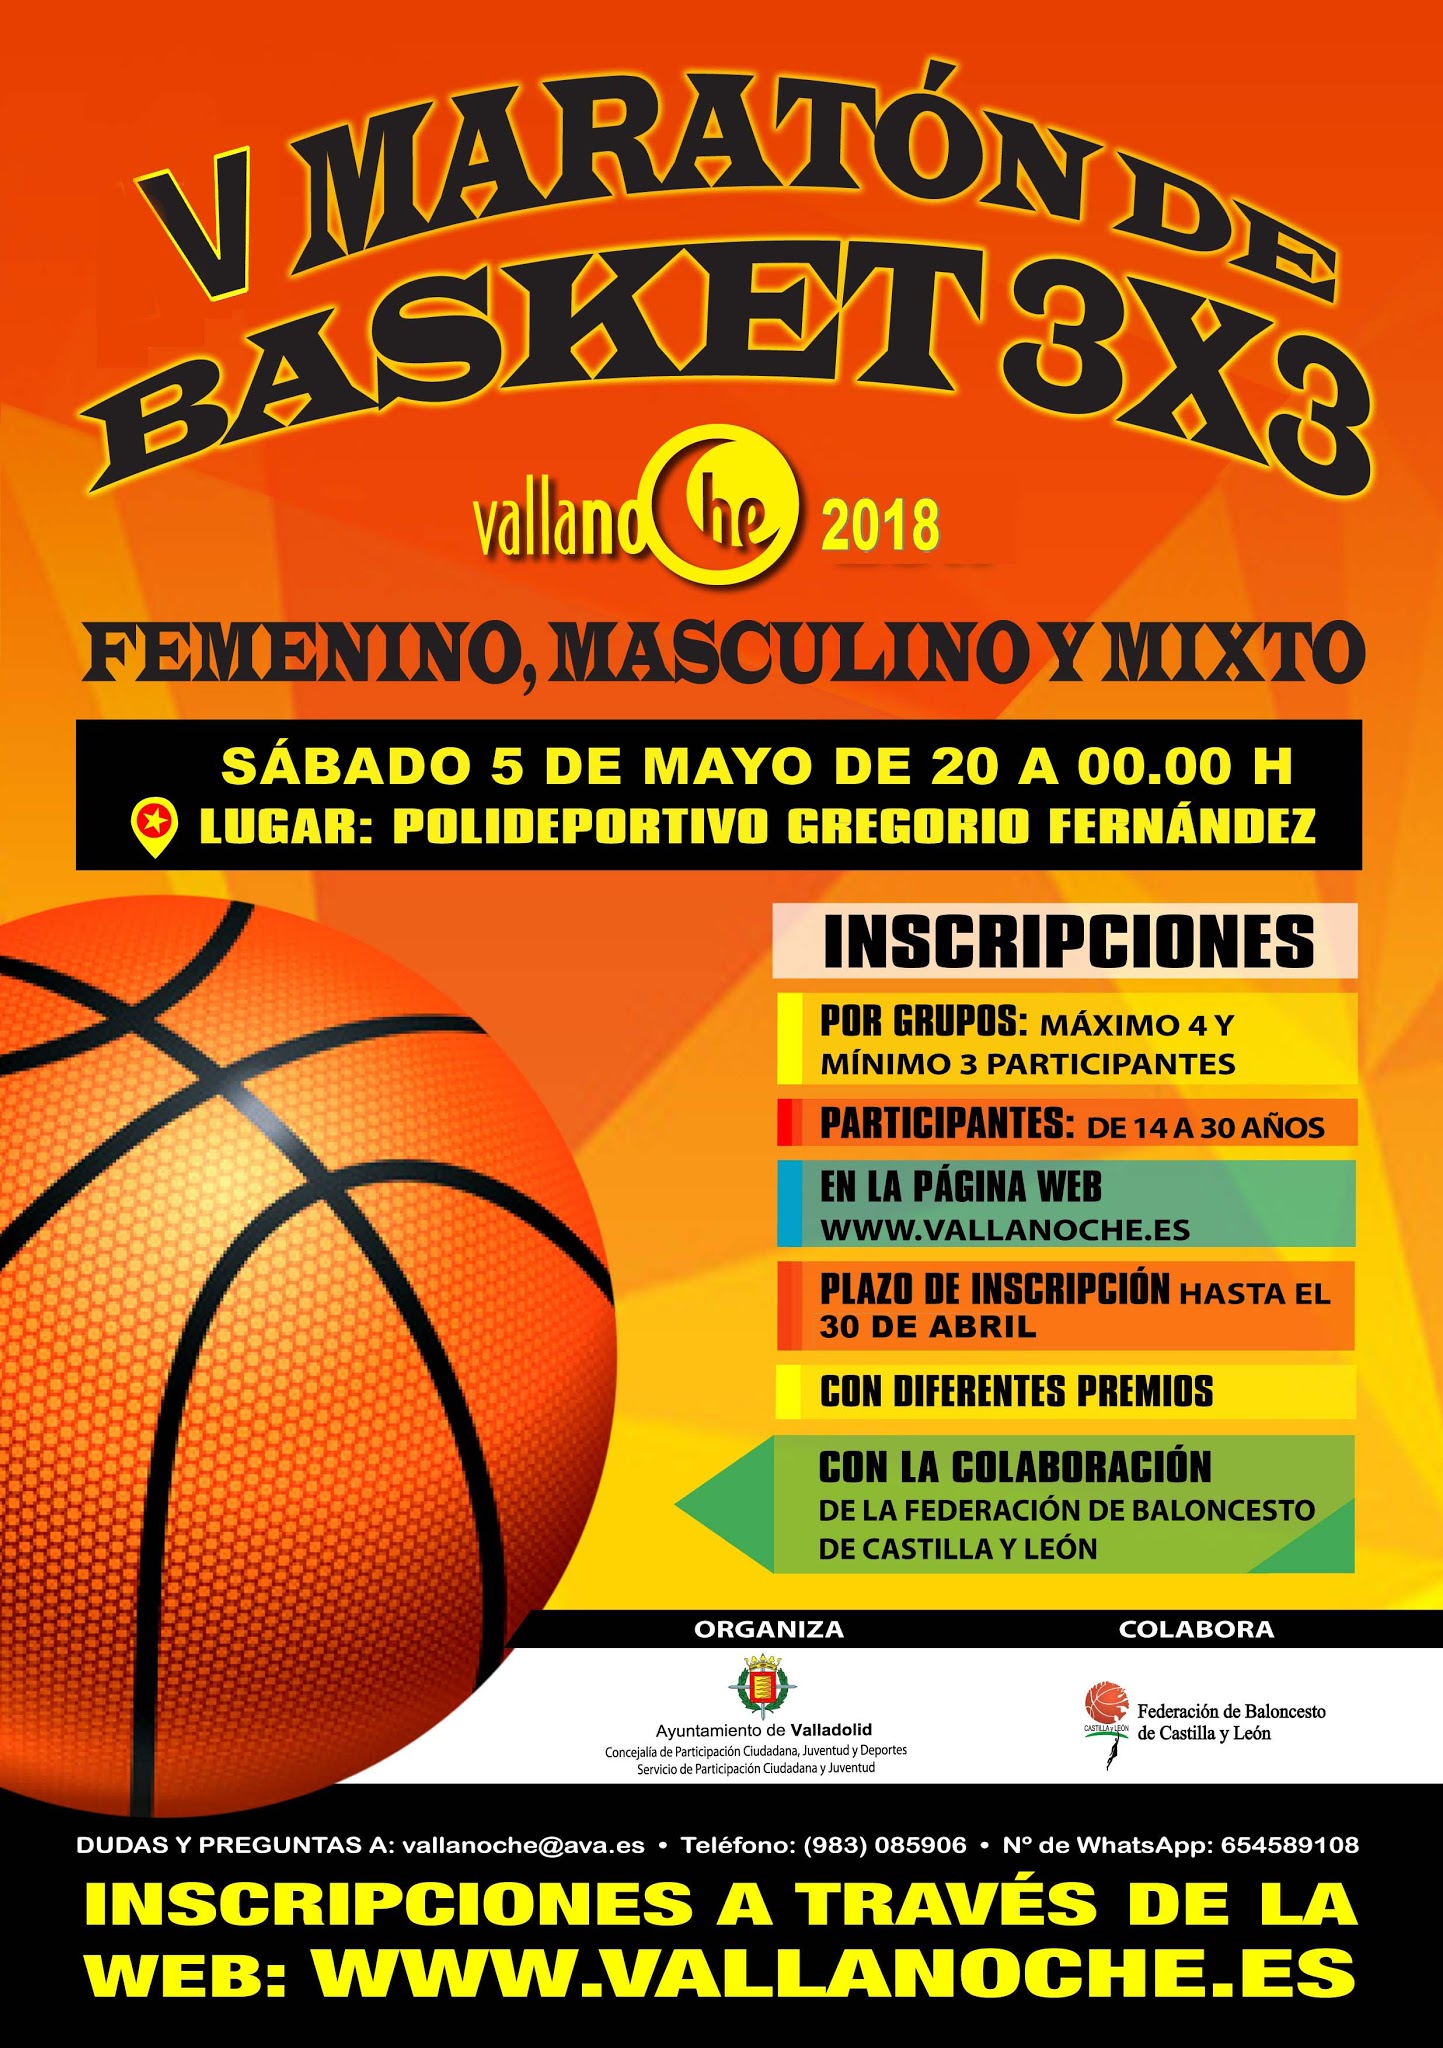 V Maratón de Basket 3x3. Vallanoche & Ayuntamiento de Valladolid